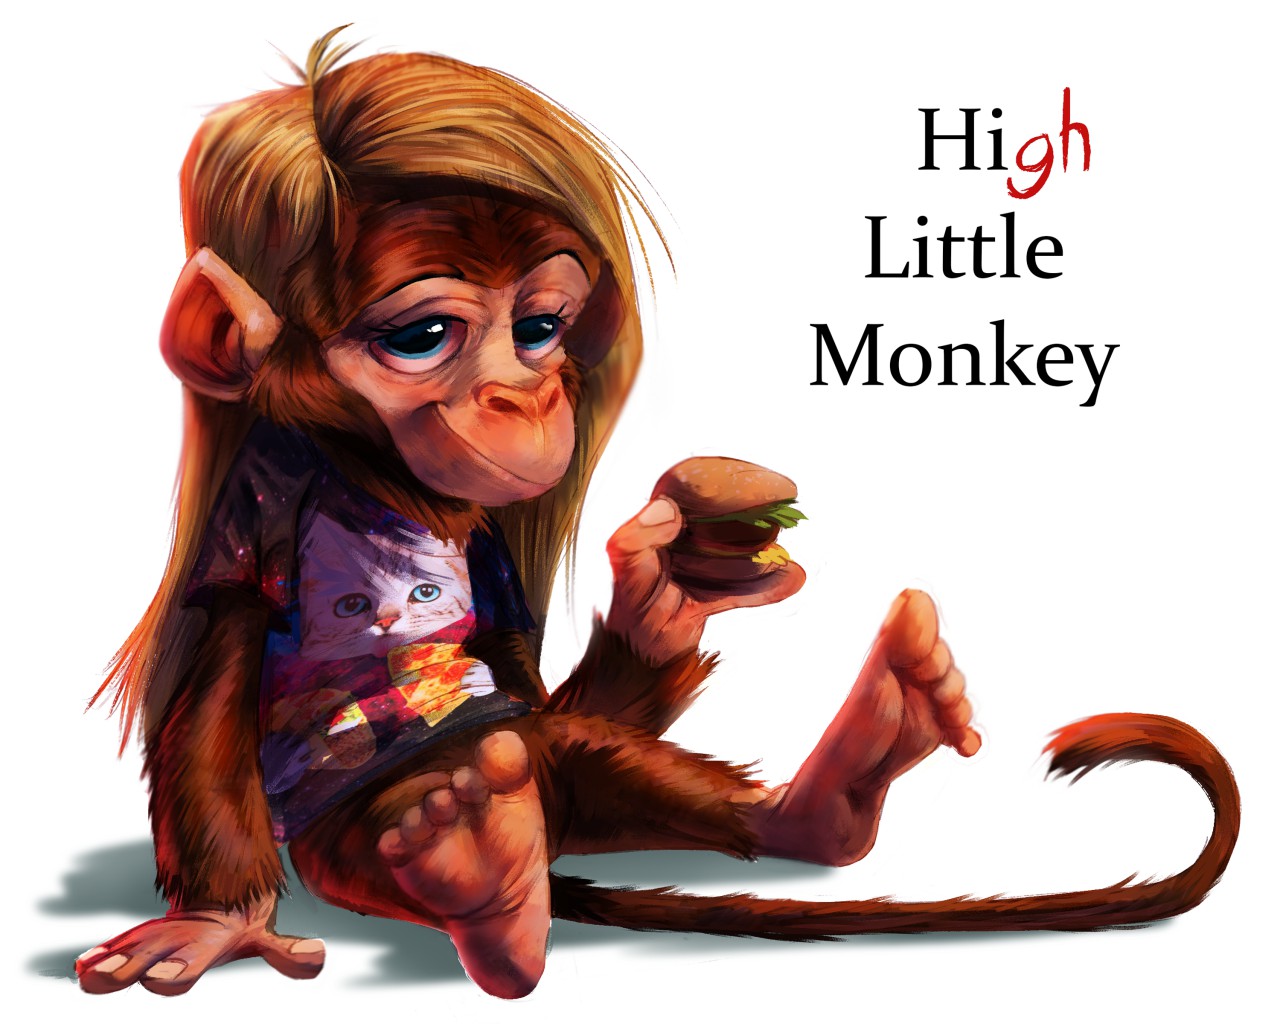 1581557369.heebjeeb_high_little_monkey